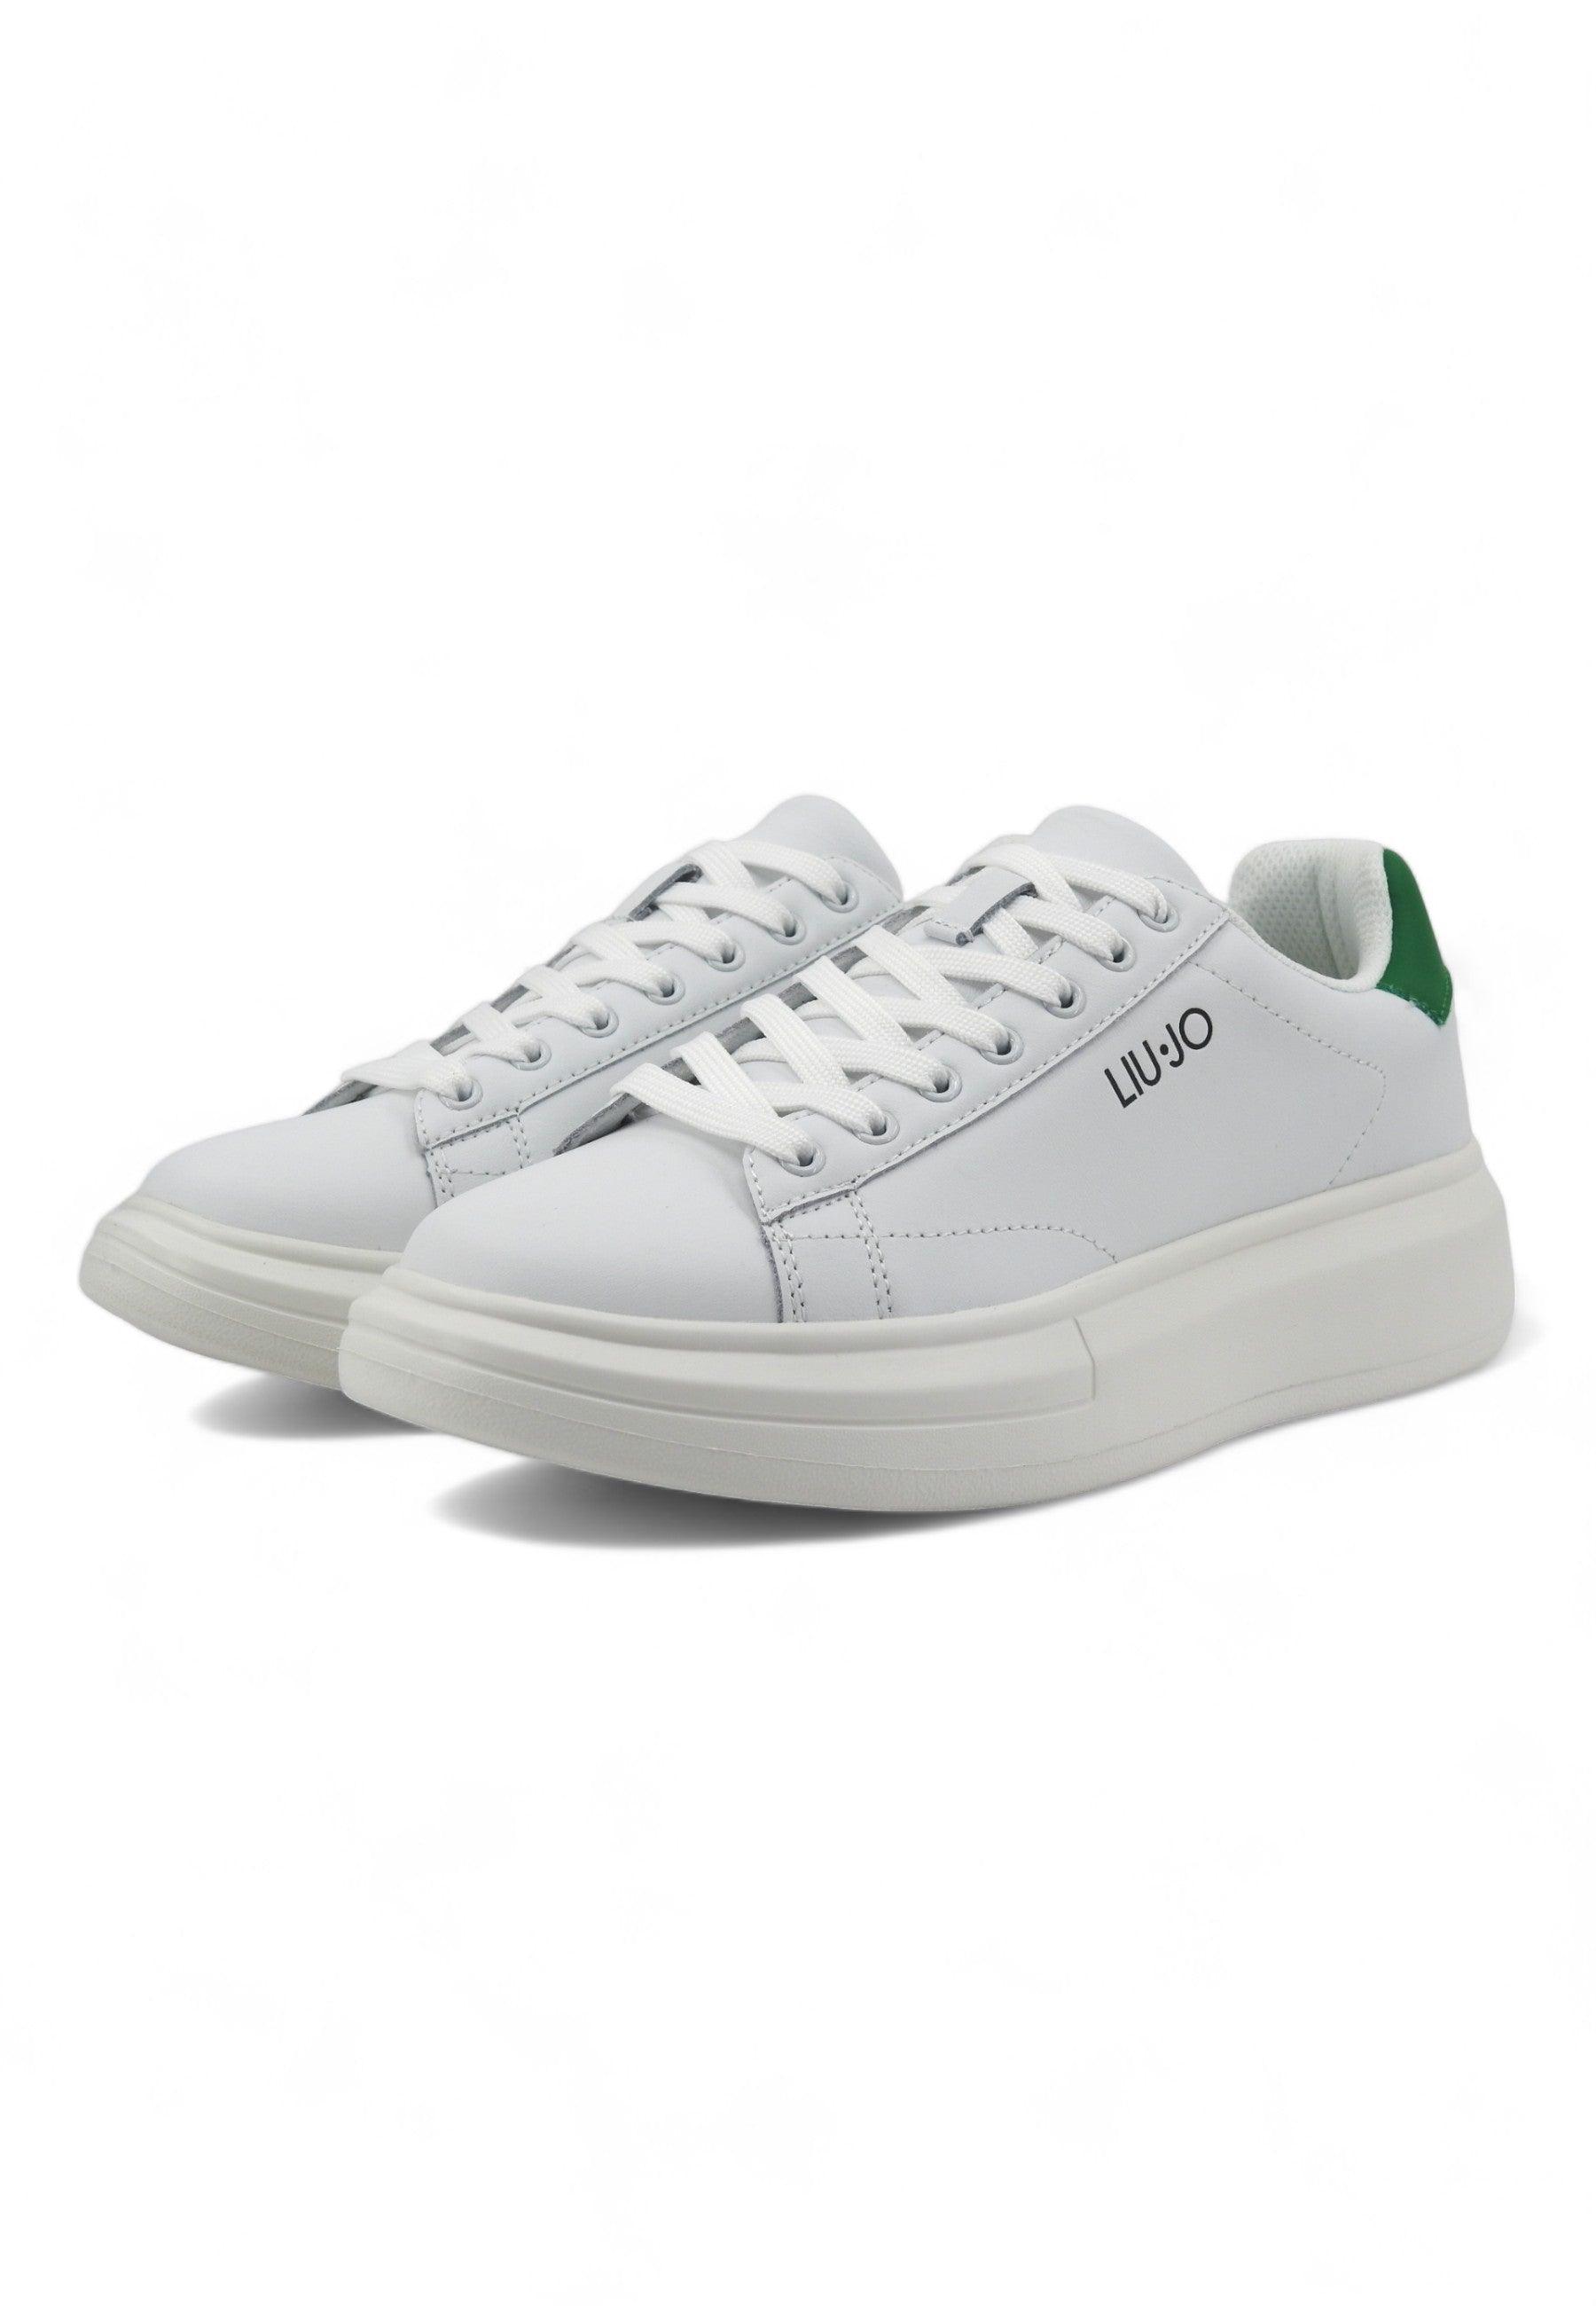 LIU JO Big 01 Sneaker Uomo White Green 7B4027-PX474 - Sandrini Calzature e Abbigliamento